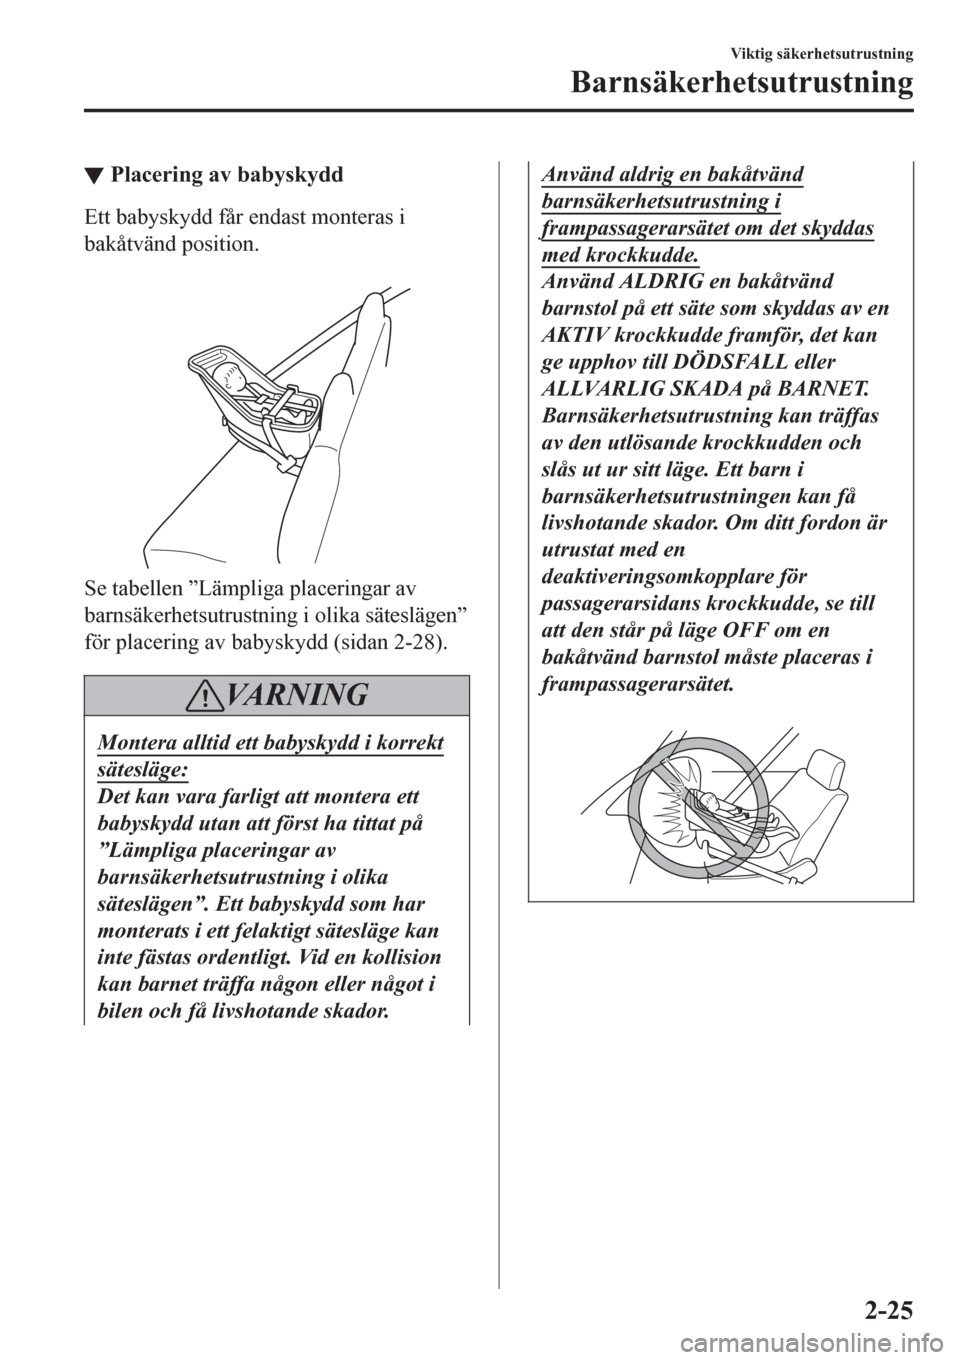 MAZDA MODEL CX-3 2016  Ägarmanual (in Swedish) ▼Placering av babyskydd
Ett babyskydd får endast monteras i
bakåtvänd position.
 
Se tabellen ”Lämpliga placeringar av
barnsäkerhetsutrustning i olika säteslägen”
för placering av babysk